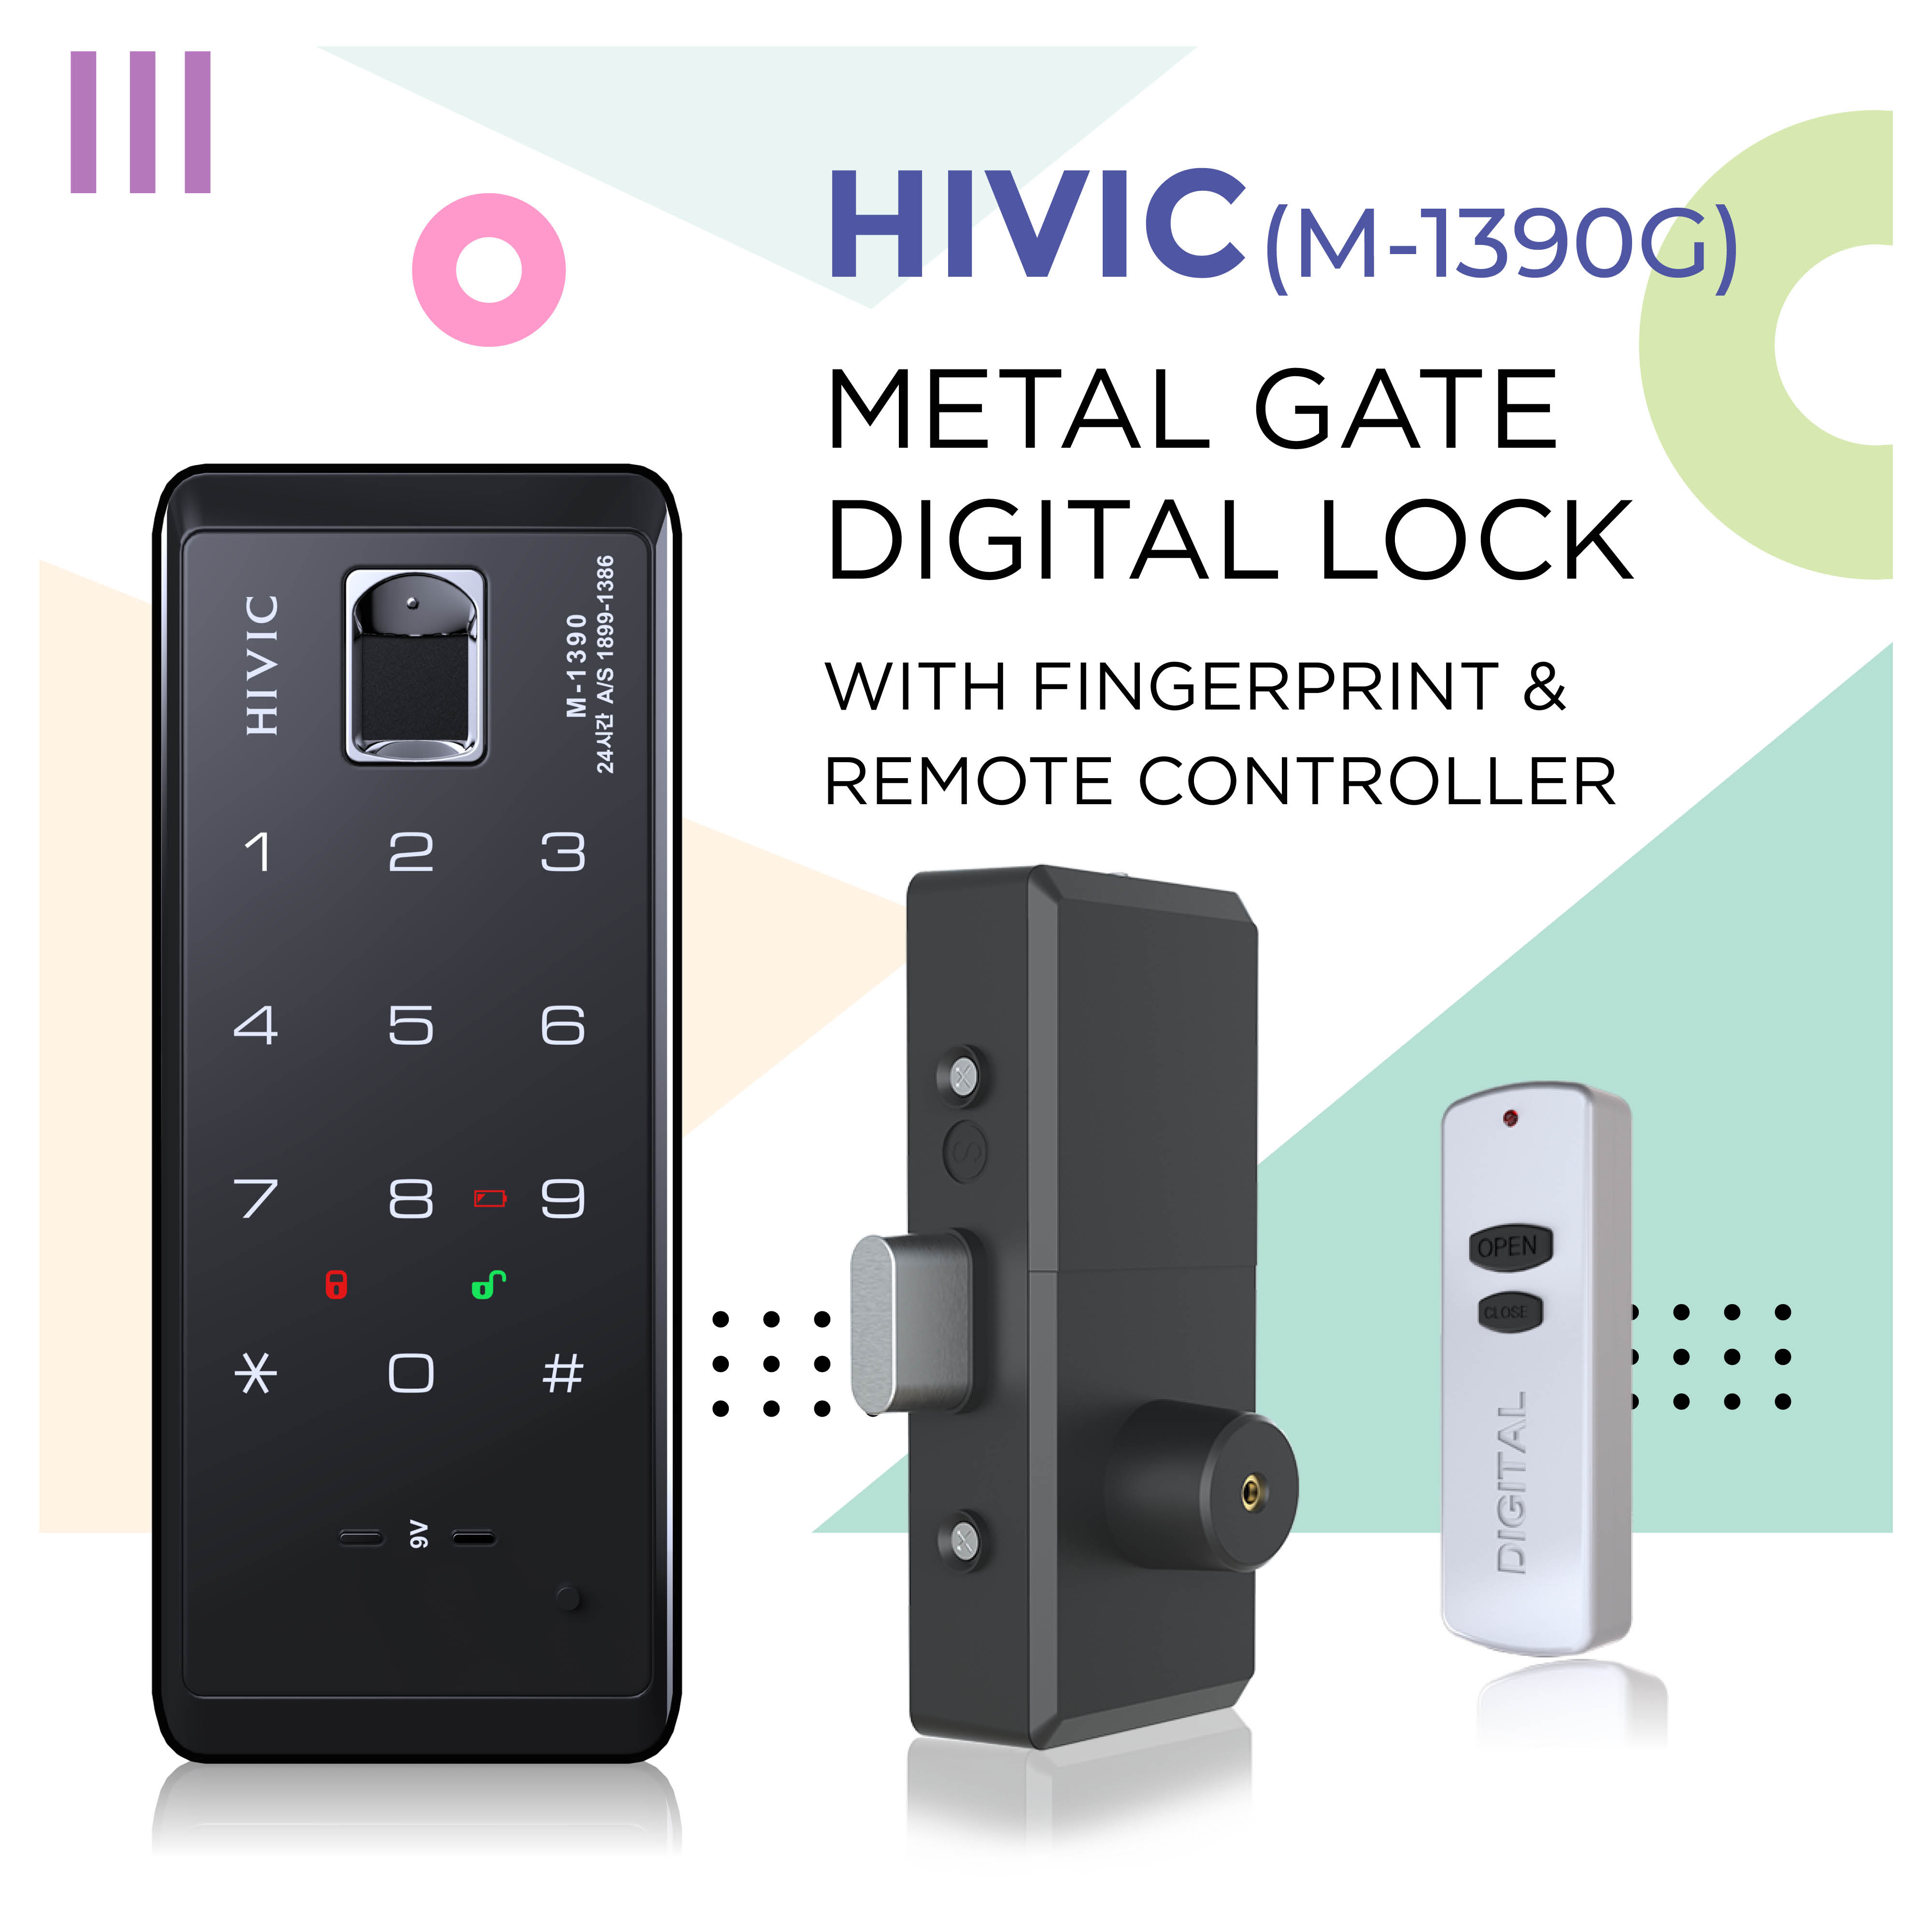 HIVIC (M-1390G) METAL GATE DIGITAL LOCK WITH FINGERPRINT